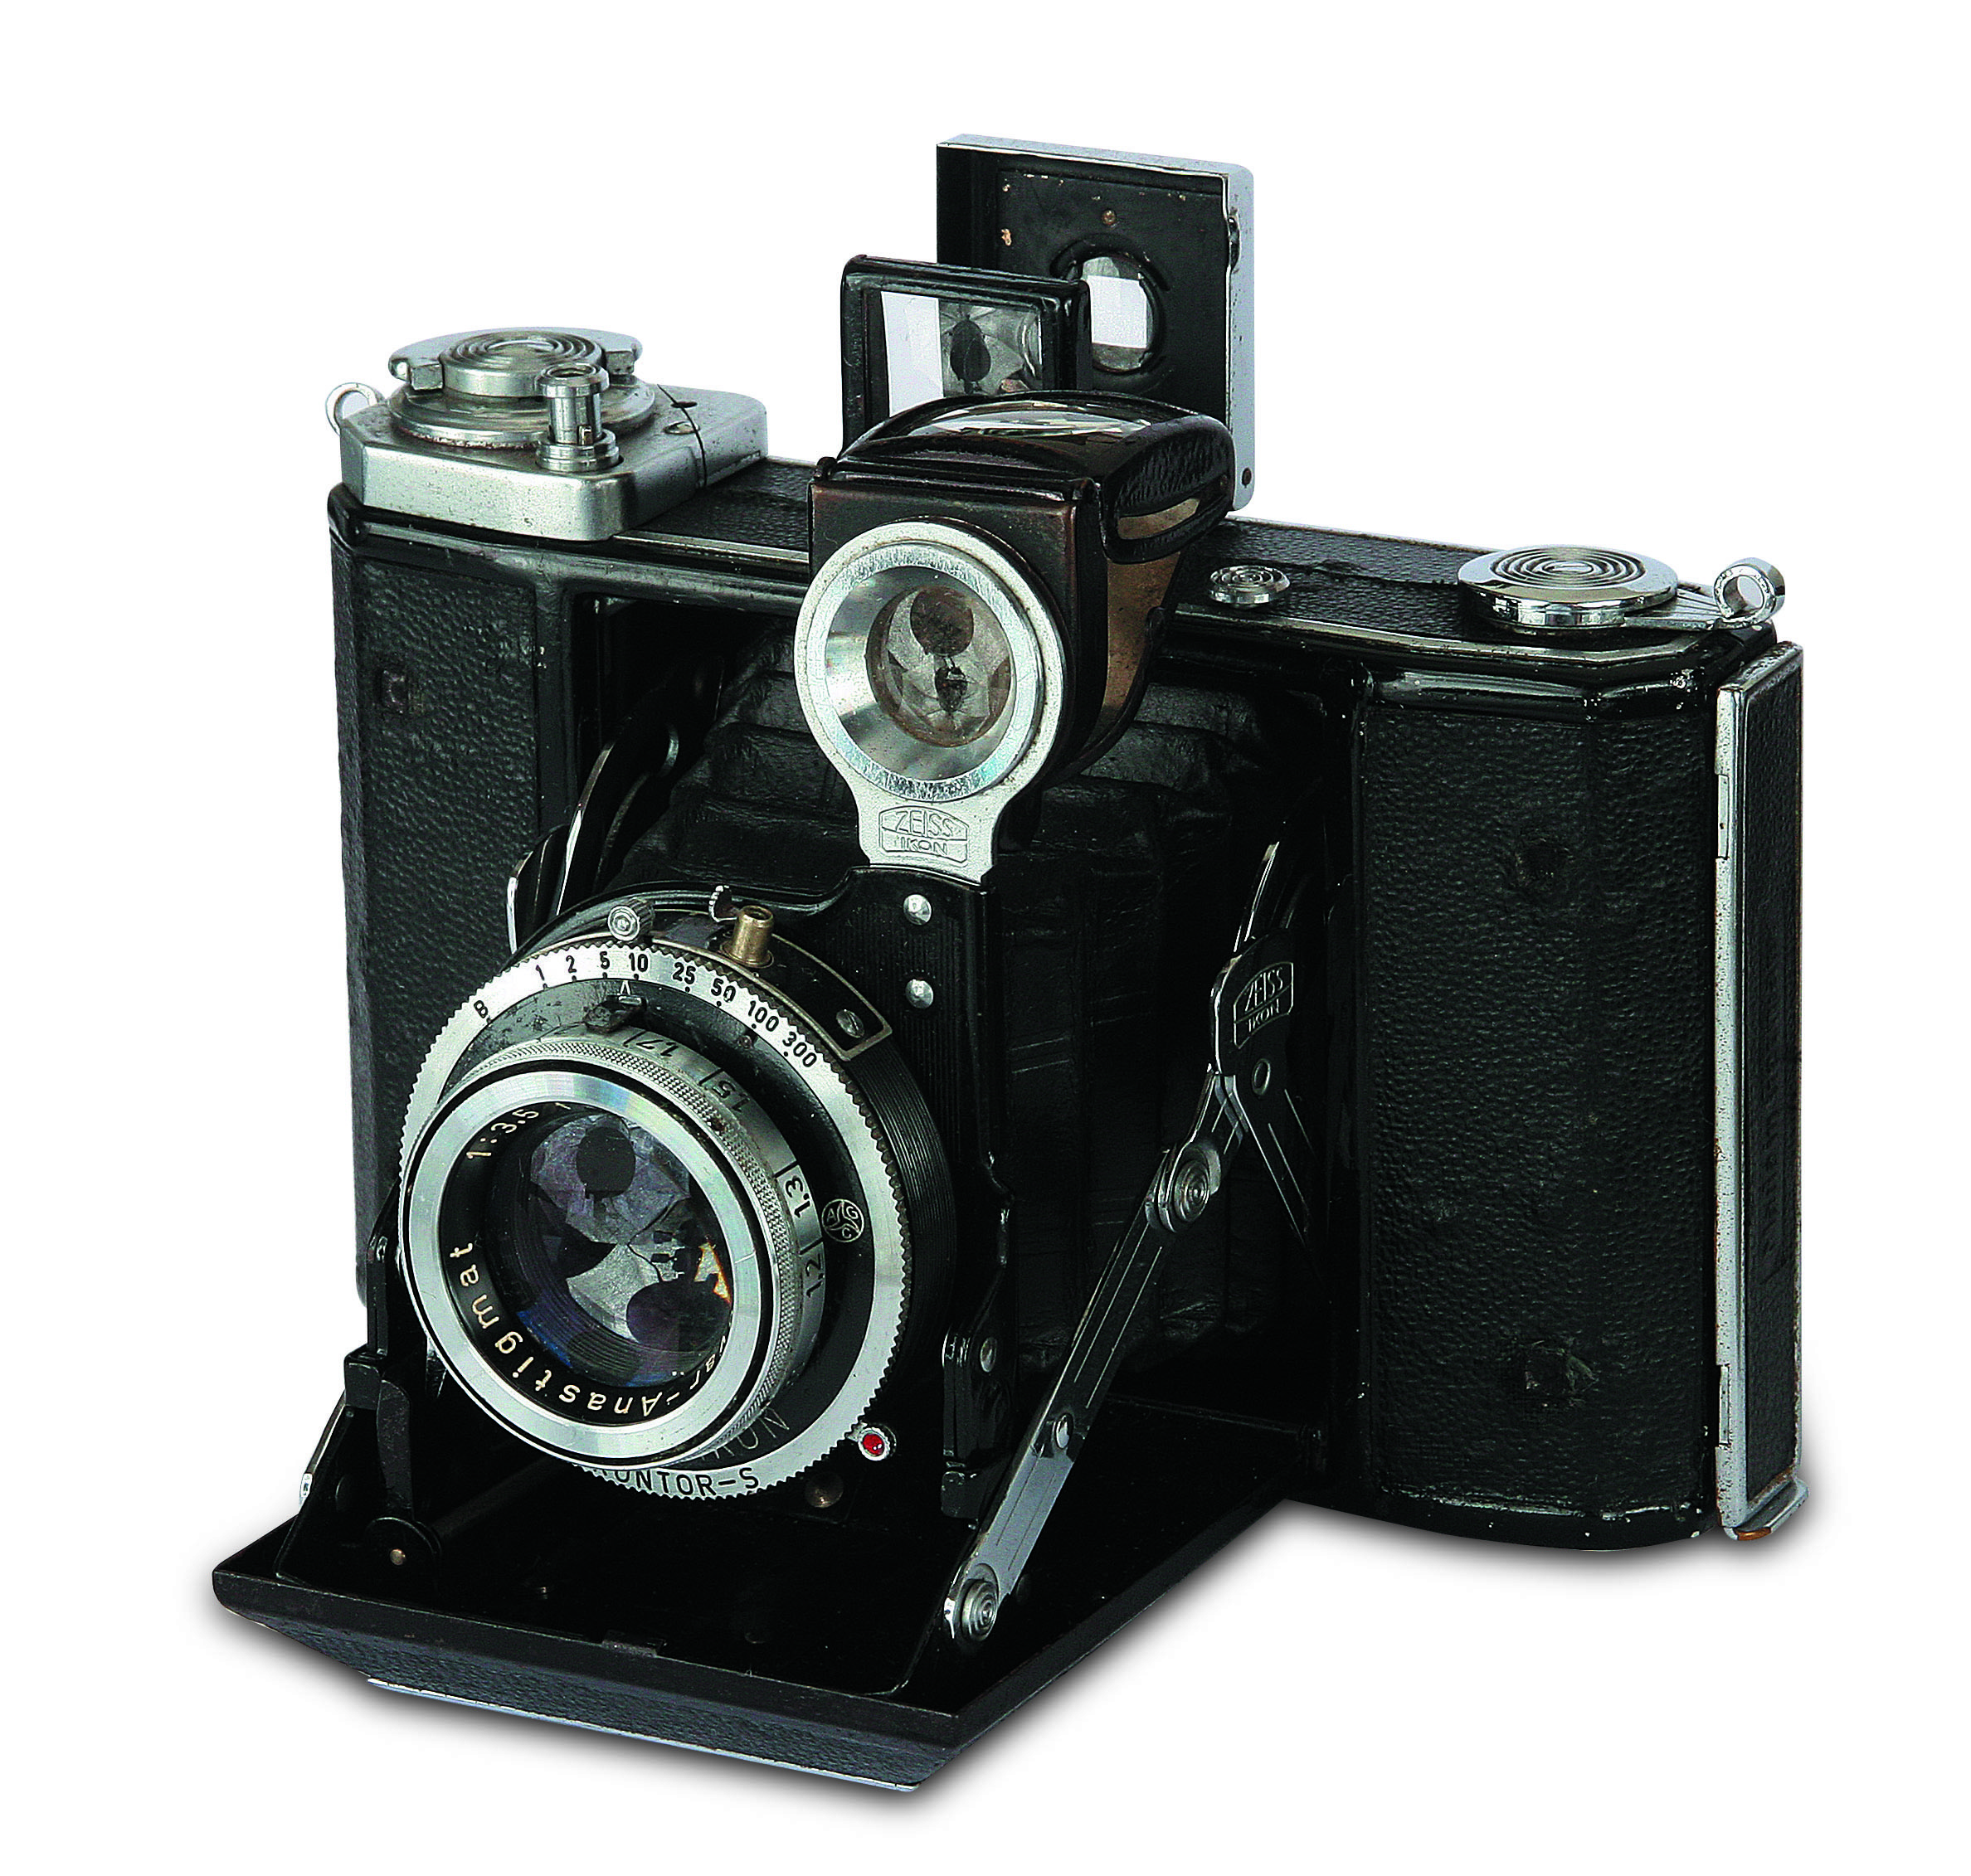 A alemã Carl Zeiss deixou de apenas fabricar lentes em 1926 e entrou no mercado de câmeras com o lançamento da linha Zeiss Ikon, caso deste modelo de 1937